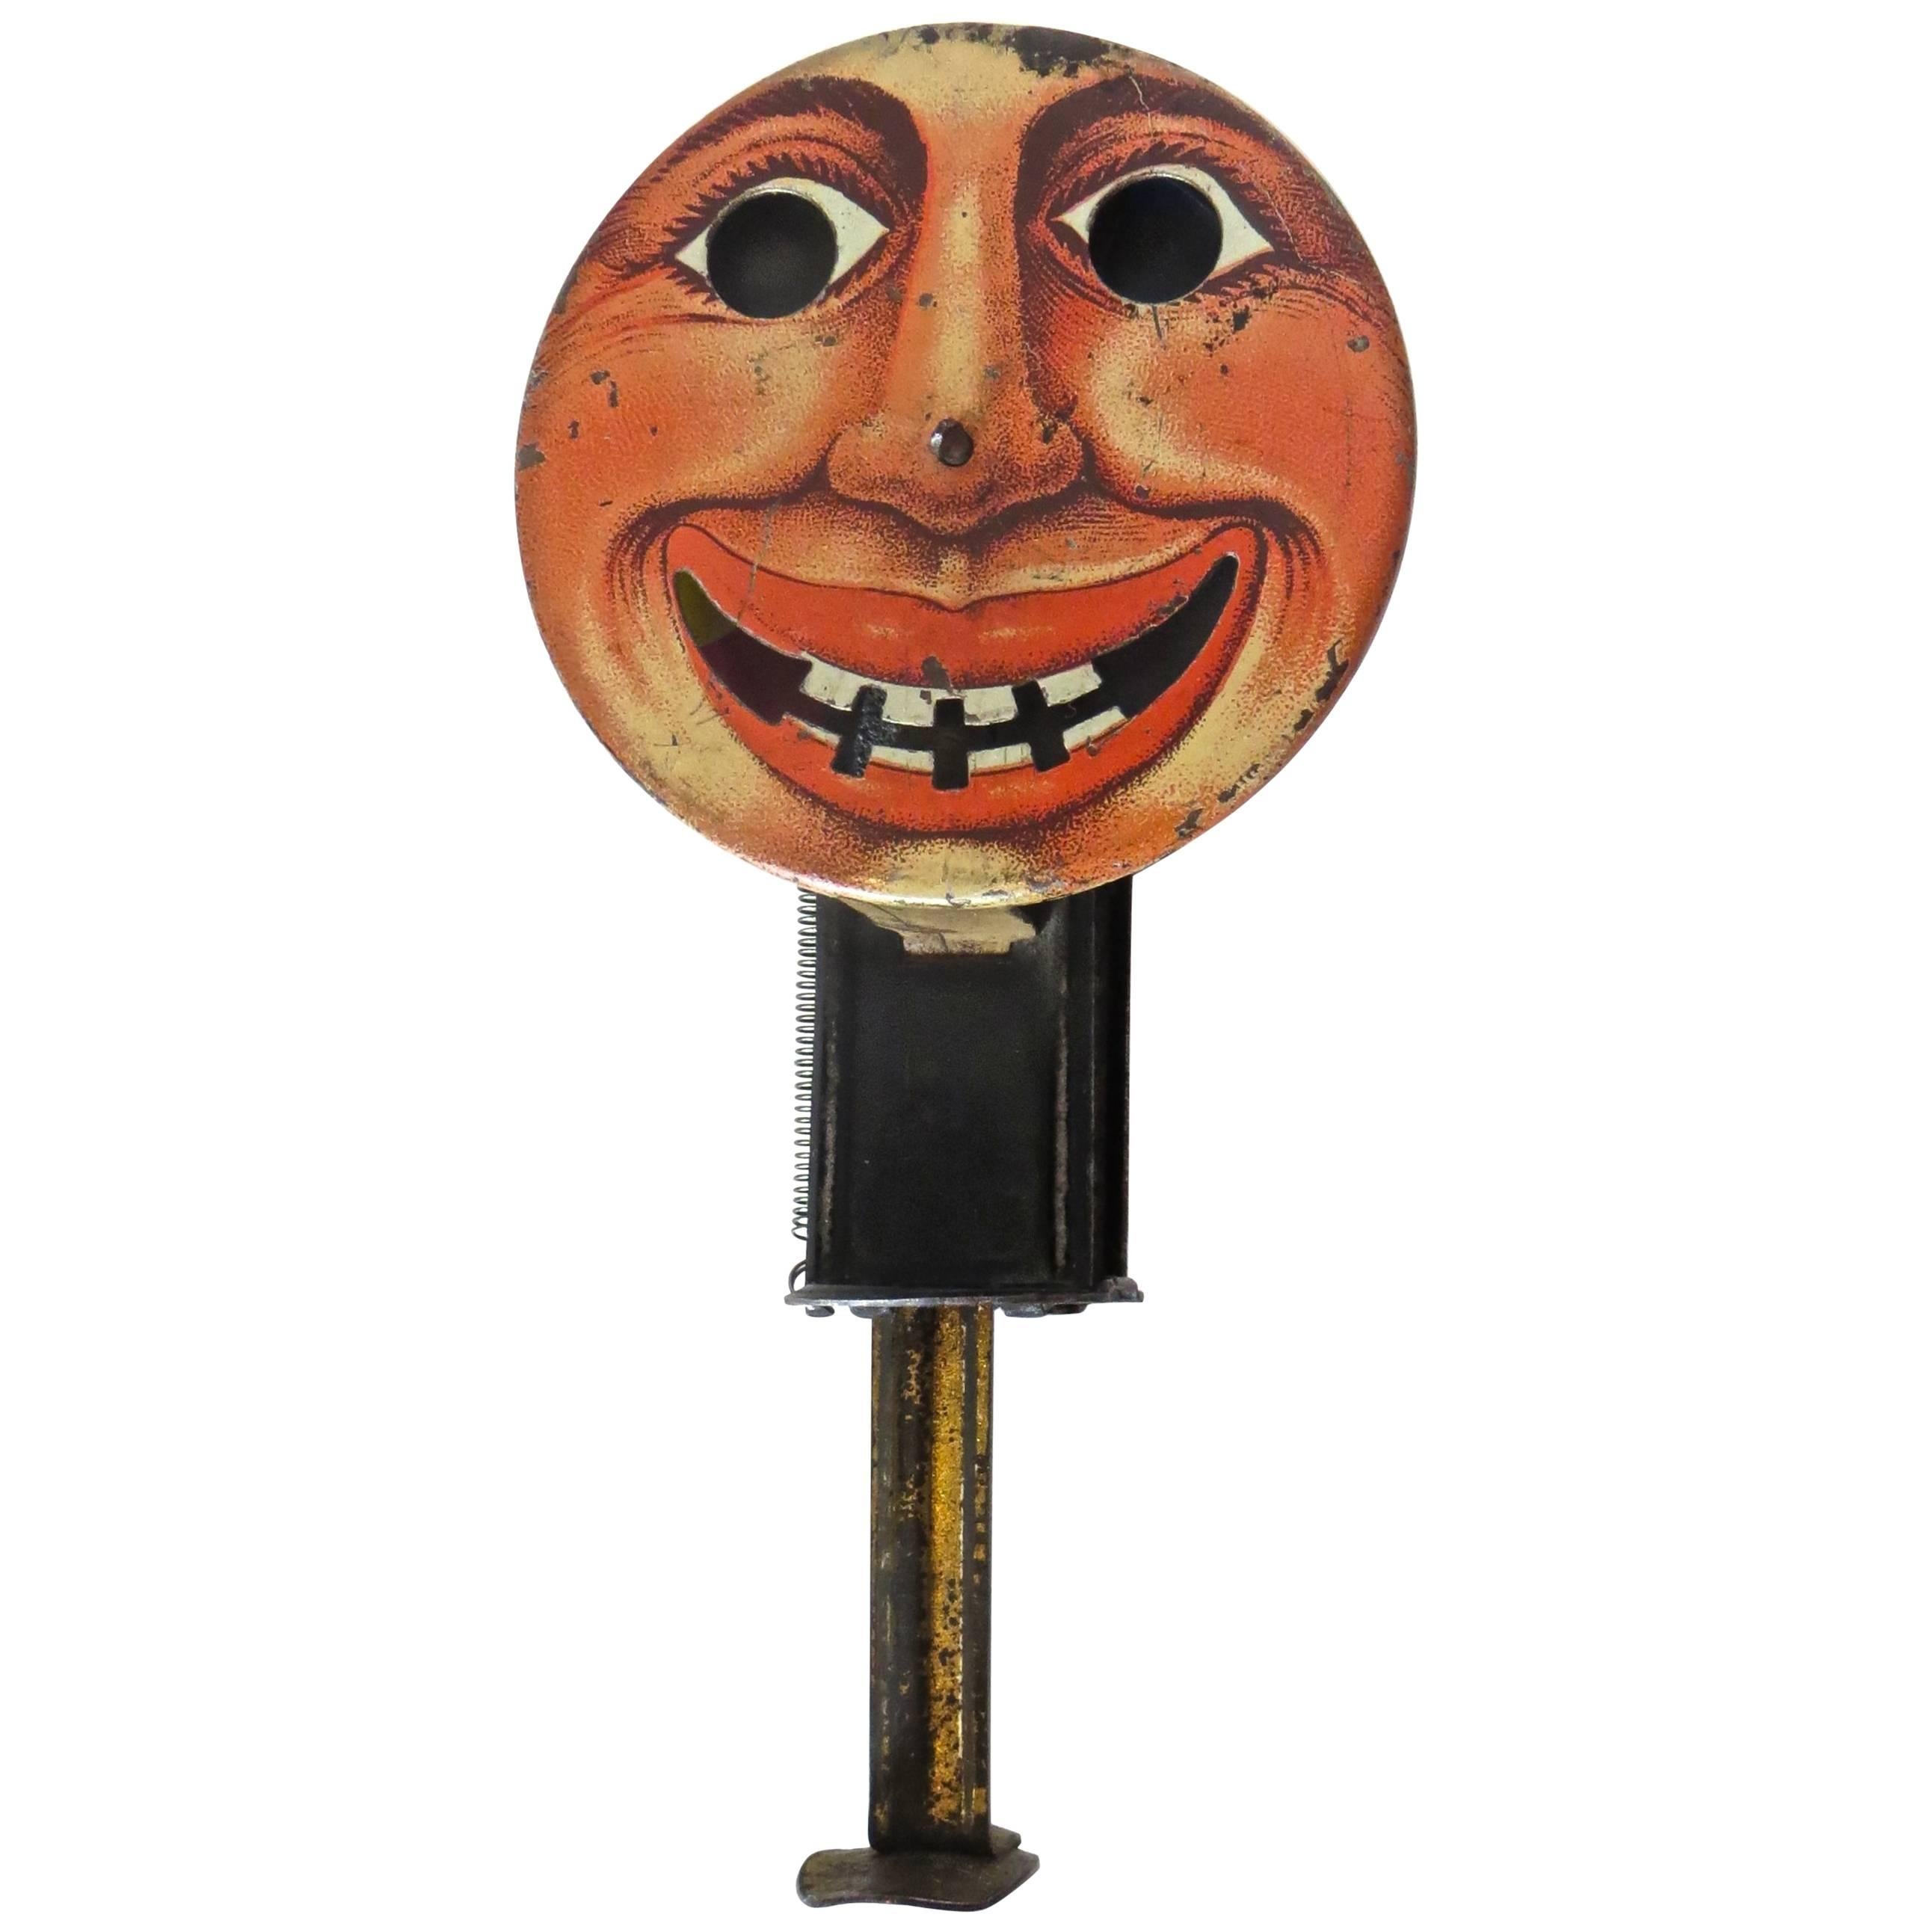 Antique Toy "Moon Face" Sparkler, German, circa 1920